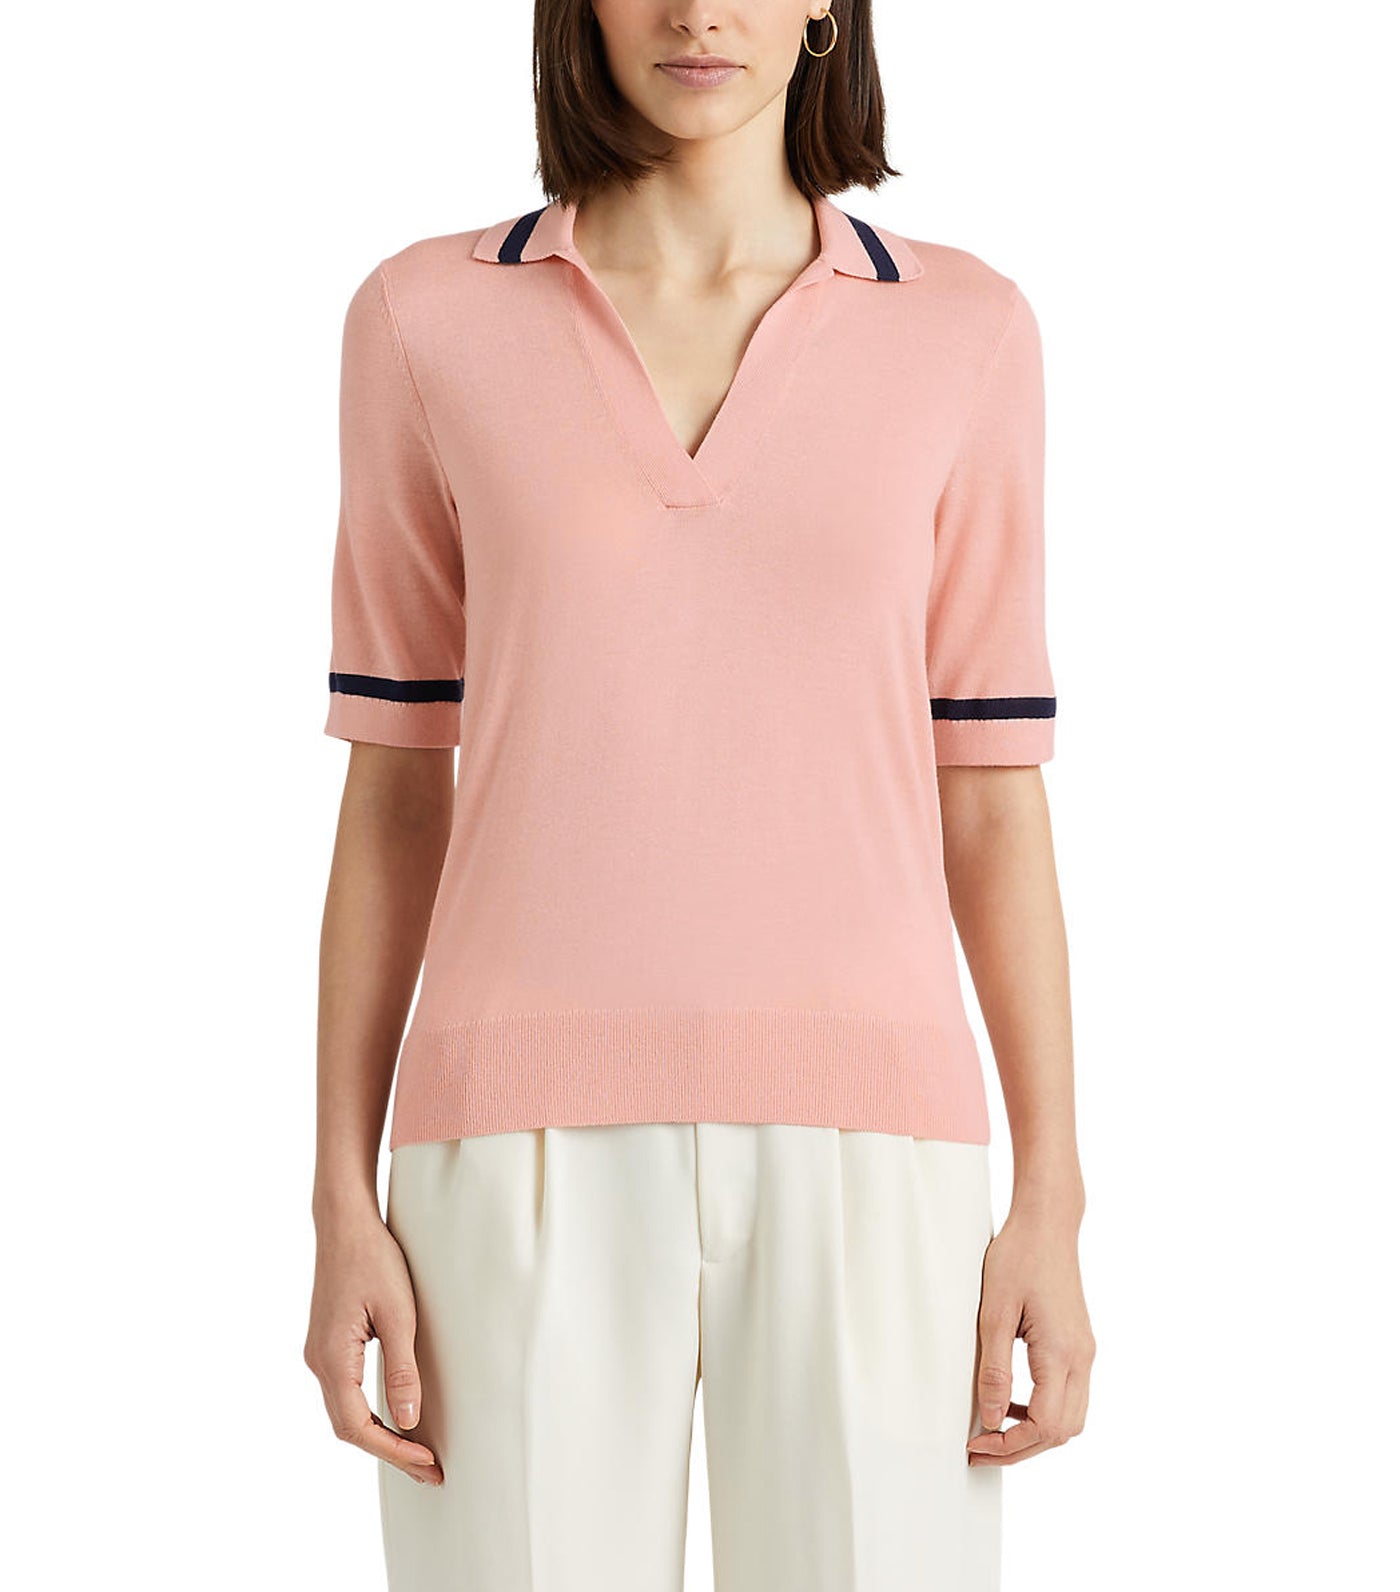 Lauren Ralph Lauren Women's Silk-Blend Short-Sleeve Sweater Pale Pink